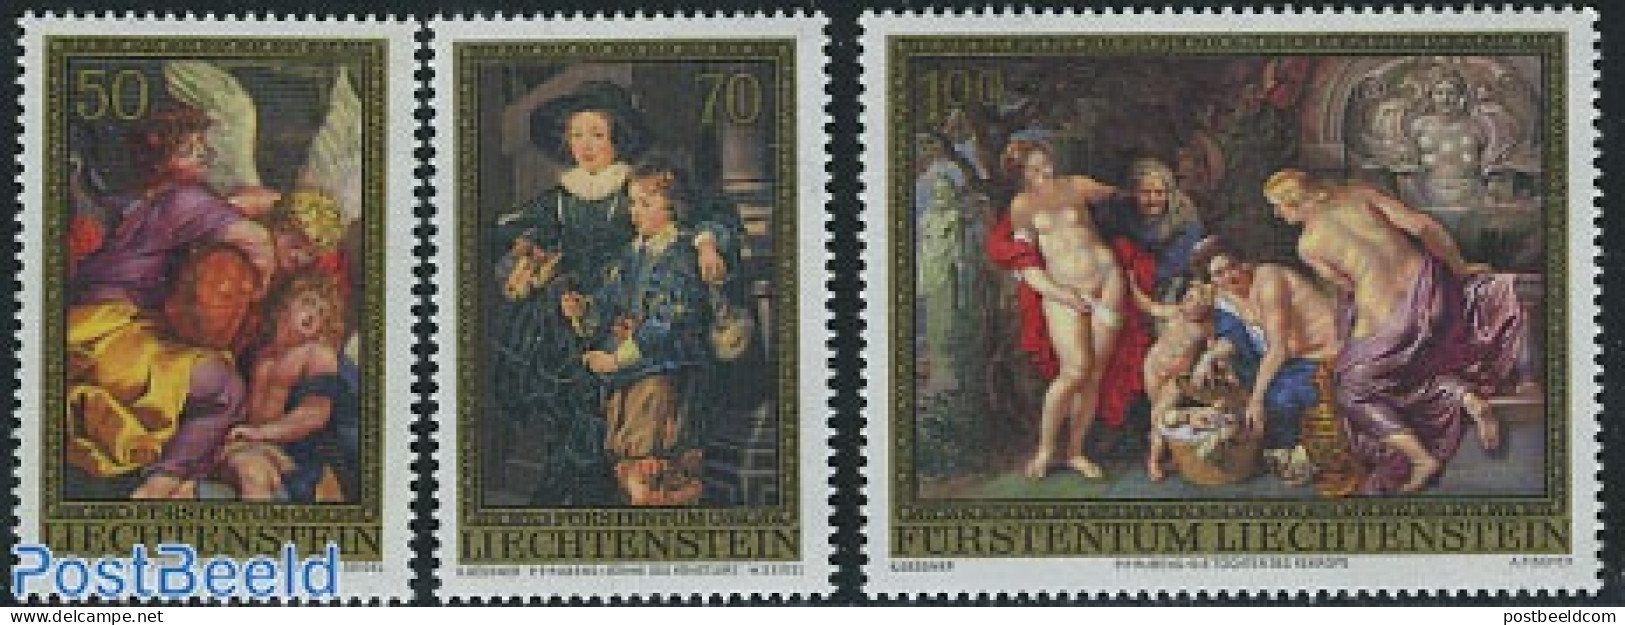 Liechtenstein 1976 P.P. Rubens Paintings 3v, Mint NH, Art - Paintings - Rubens - Unused Stamps